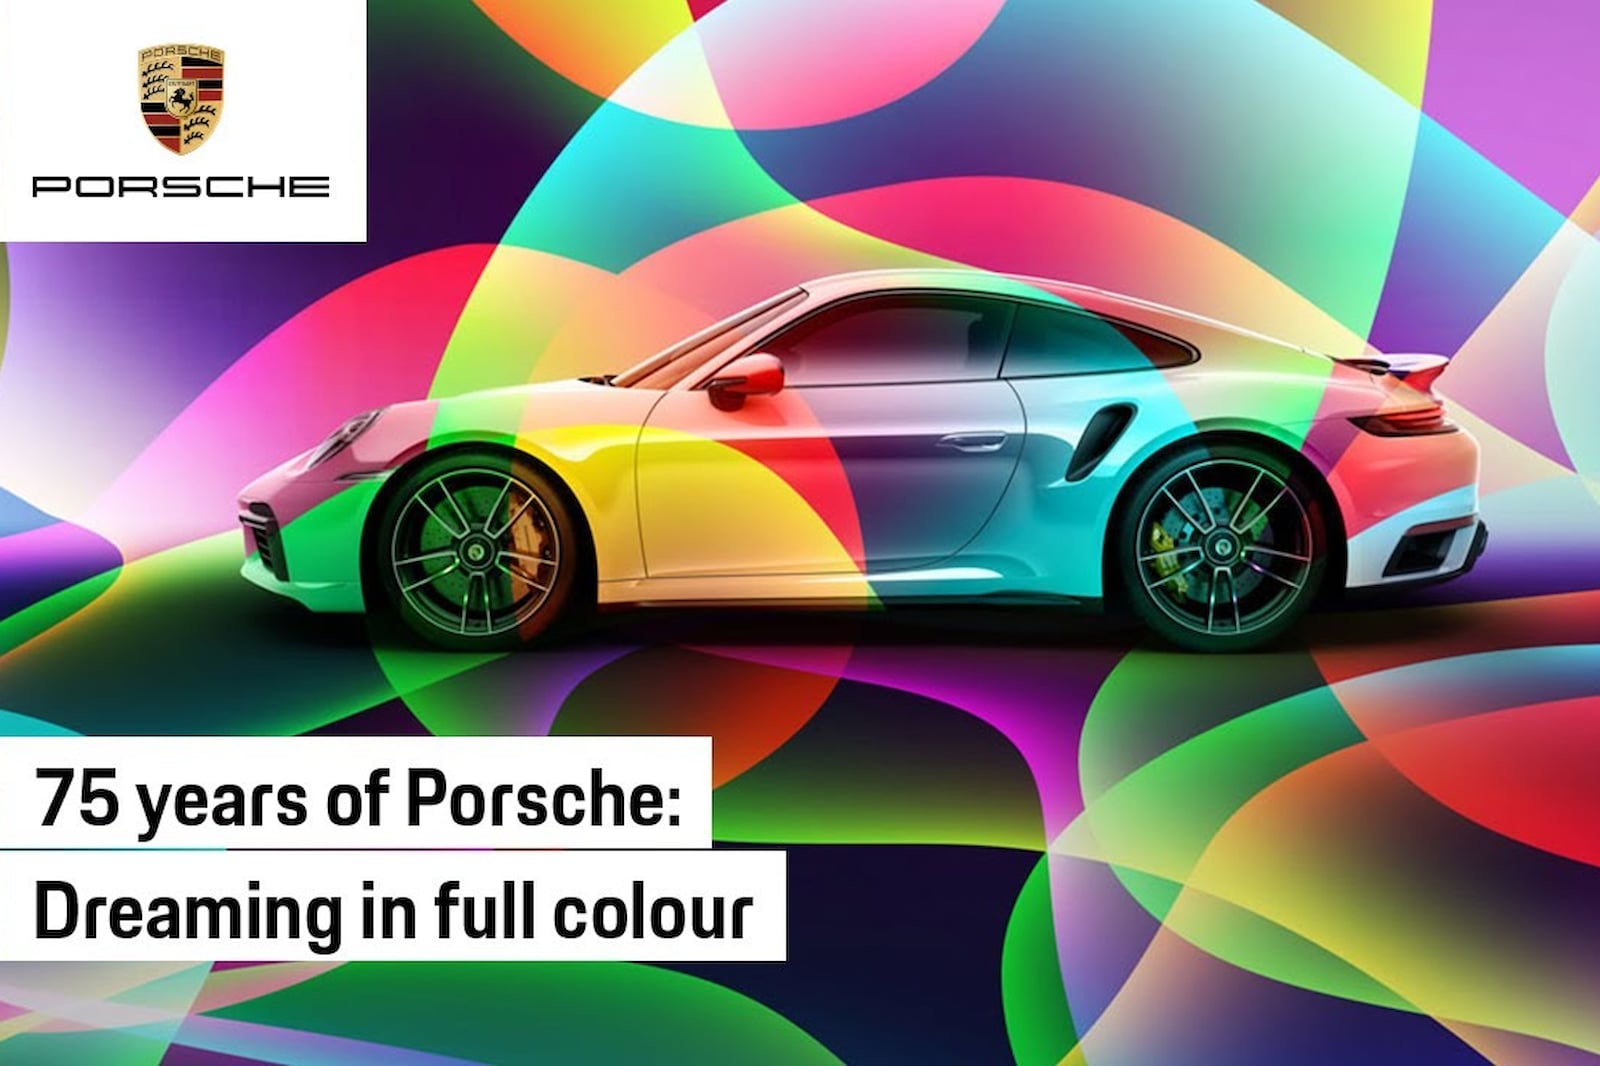 Но бренд — это гораздо больше, чем его успехи в автоспорте. Porsche завоевал множество поклонников невероятным набором возможностей персонализации, самой известной из которых является услуга покраски по образцу. У автопроизводителя есть множество отт